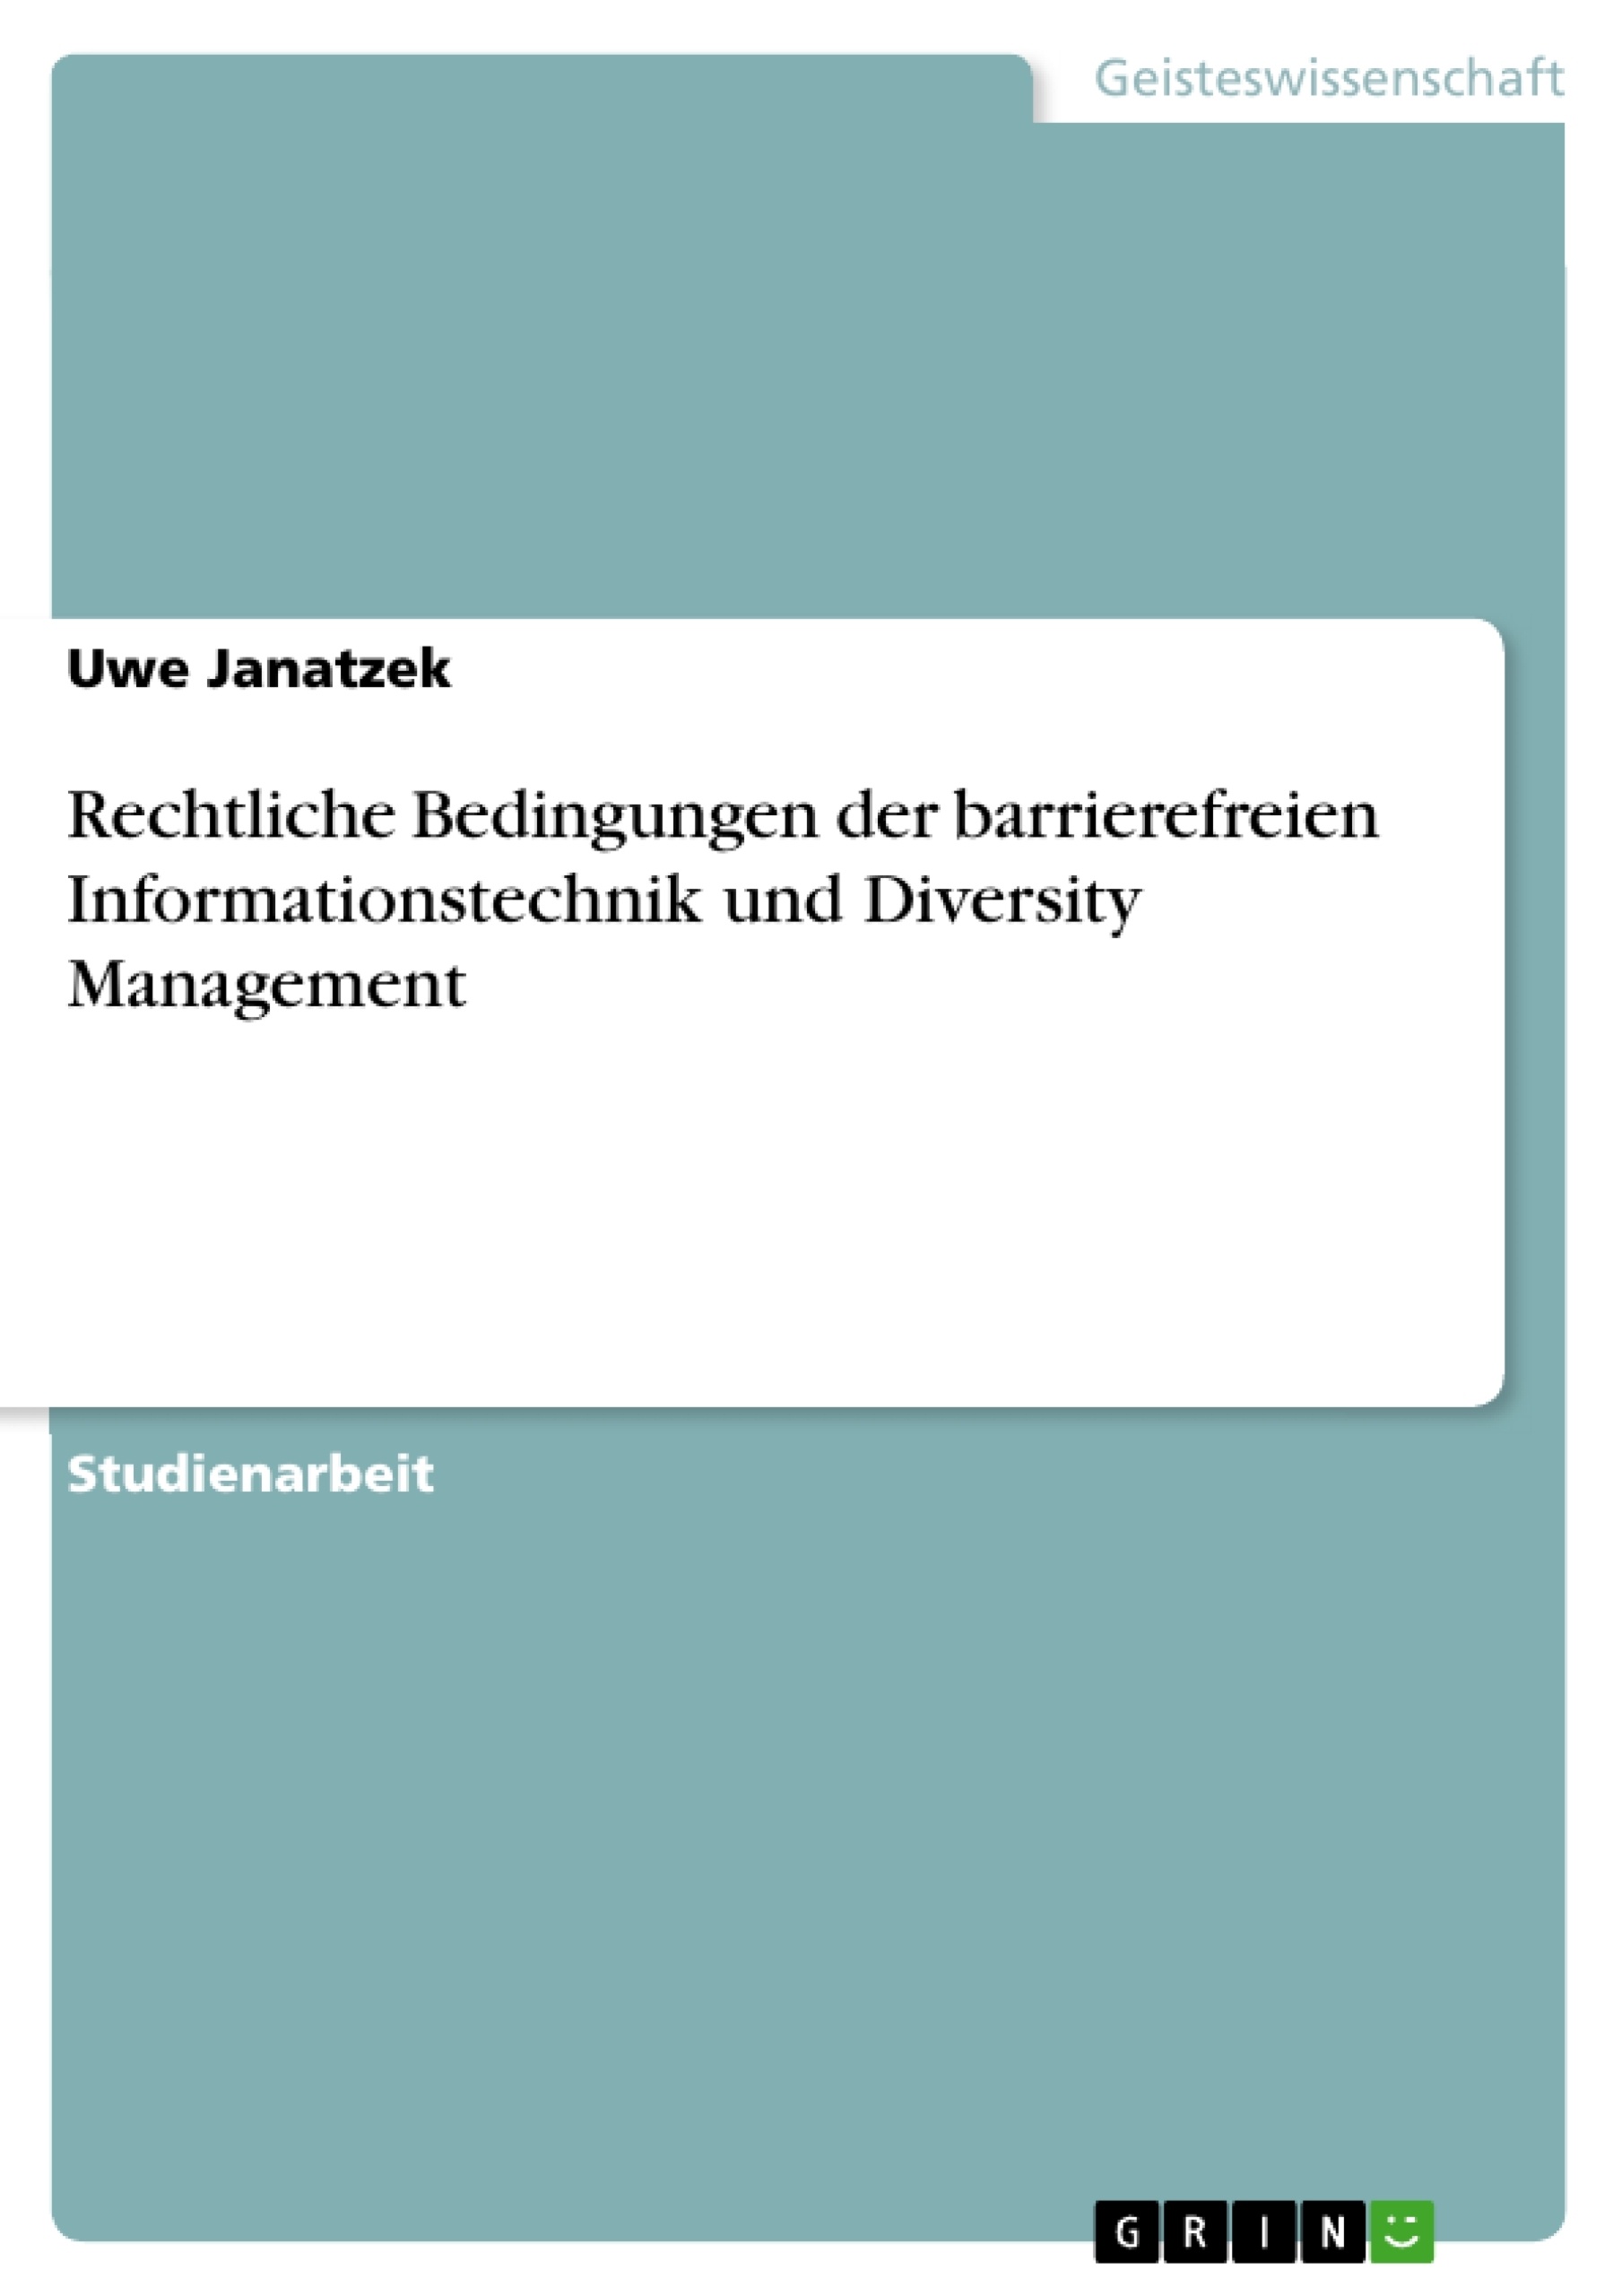 Title: Rechtliche Bedingungen der barrierefreien Informationstechnik und Diversity Management